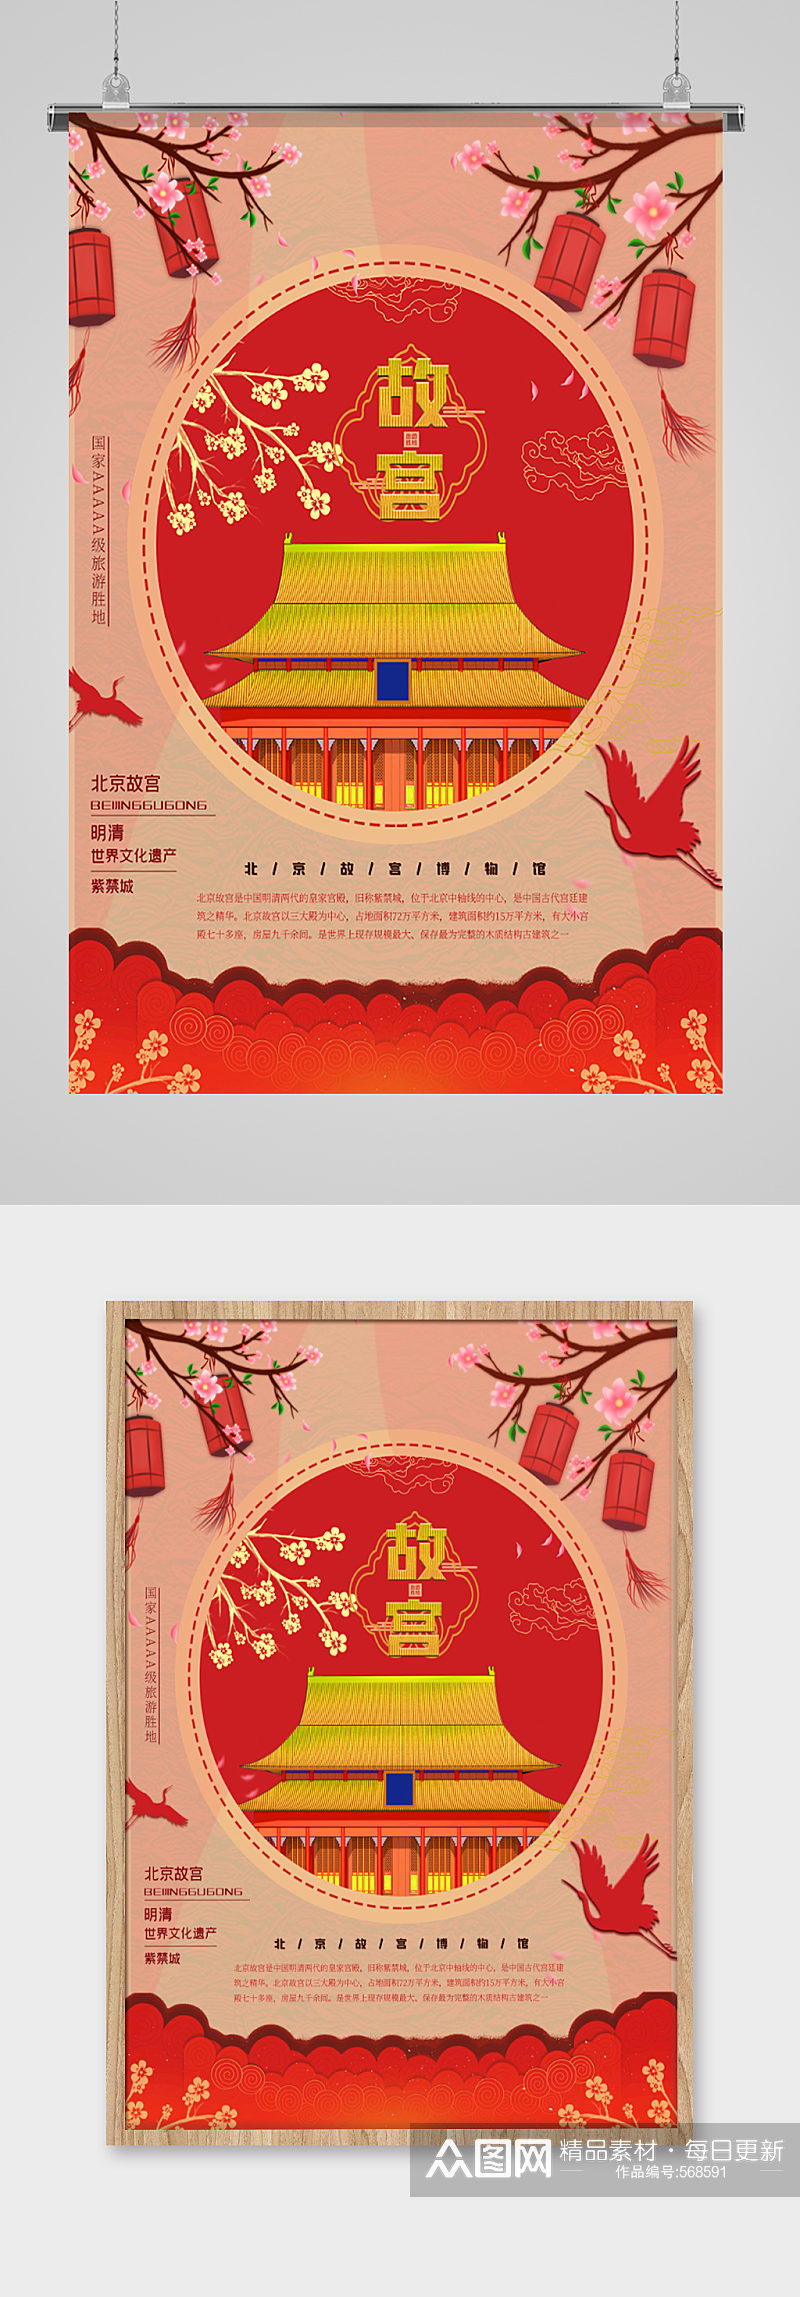 北京故宫博物馆中式海报素材